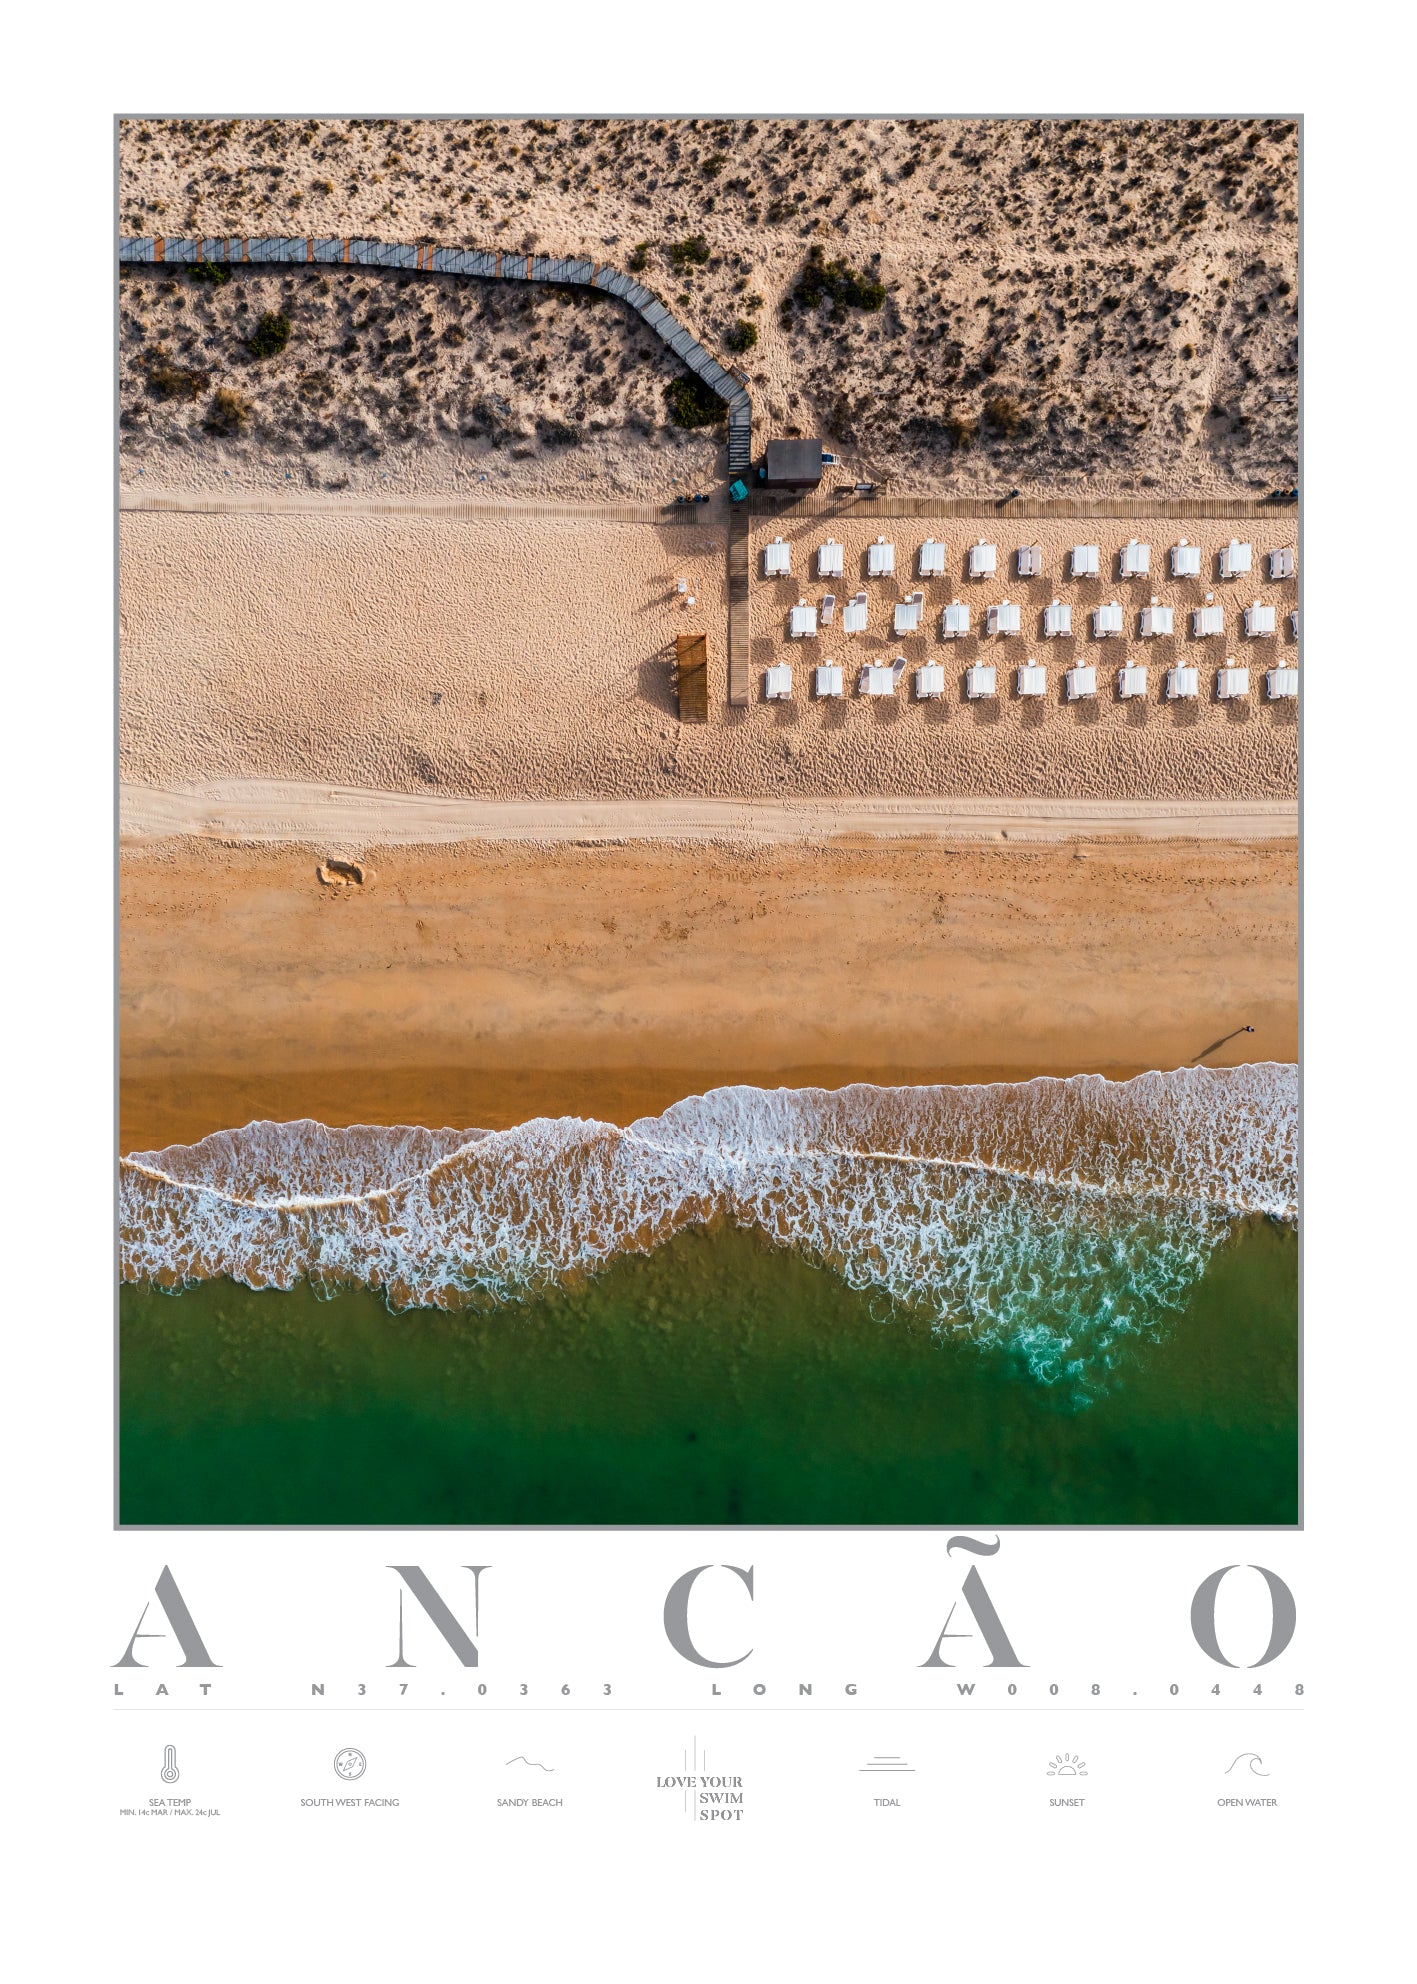 ANCÃO BEACH PORTUGAL